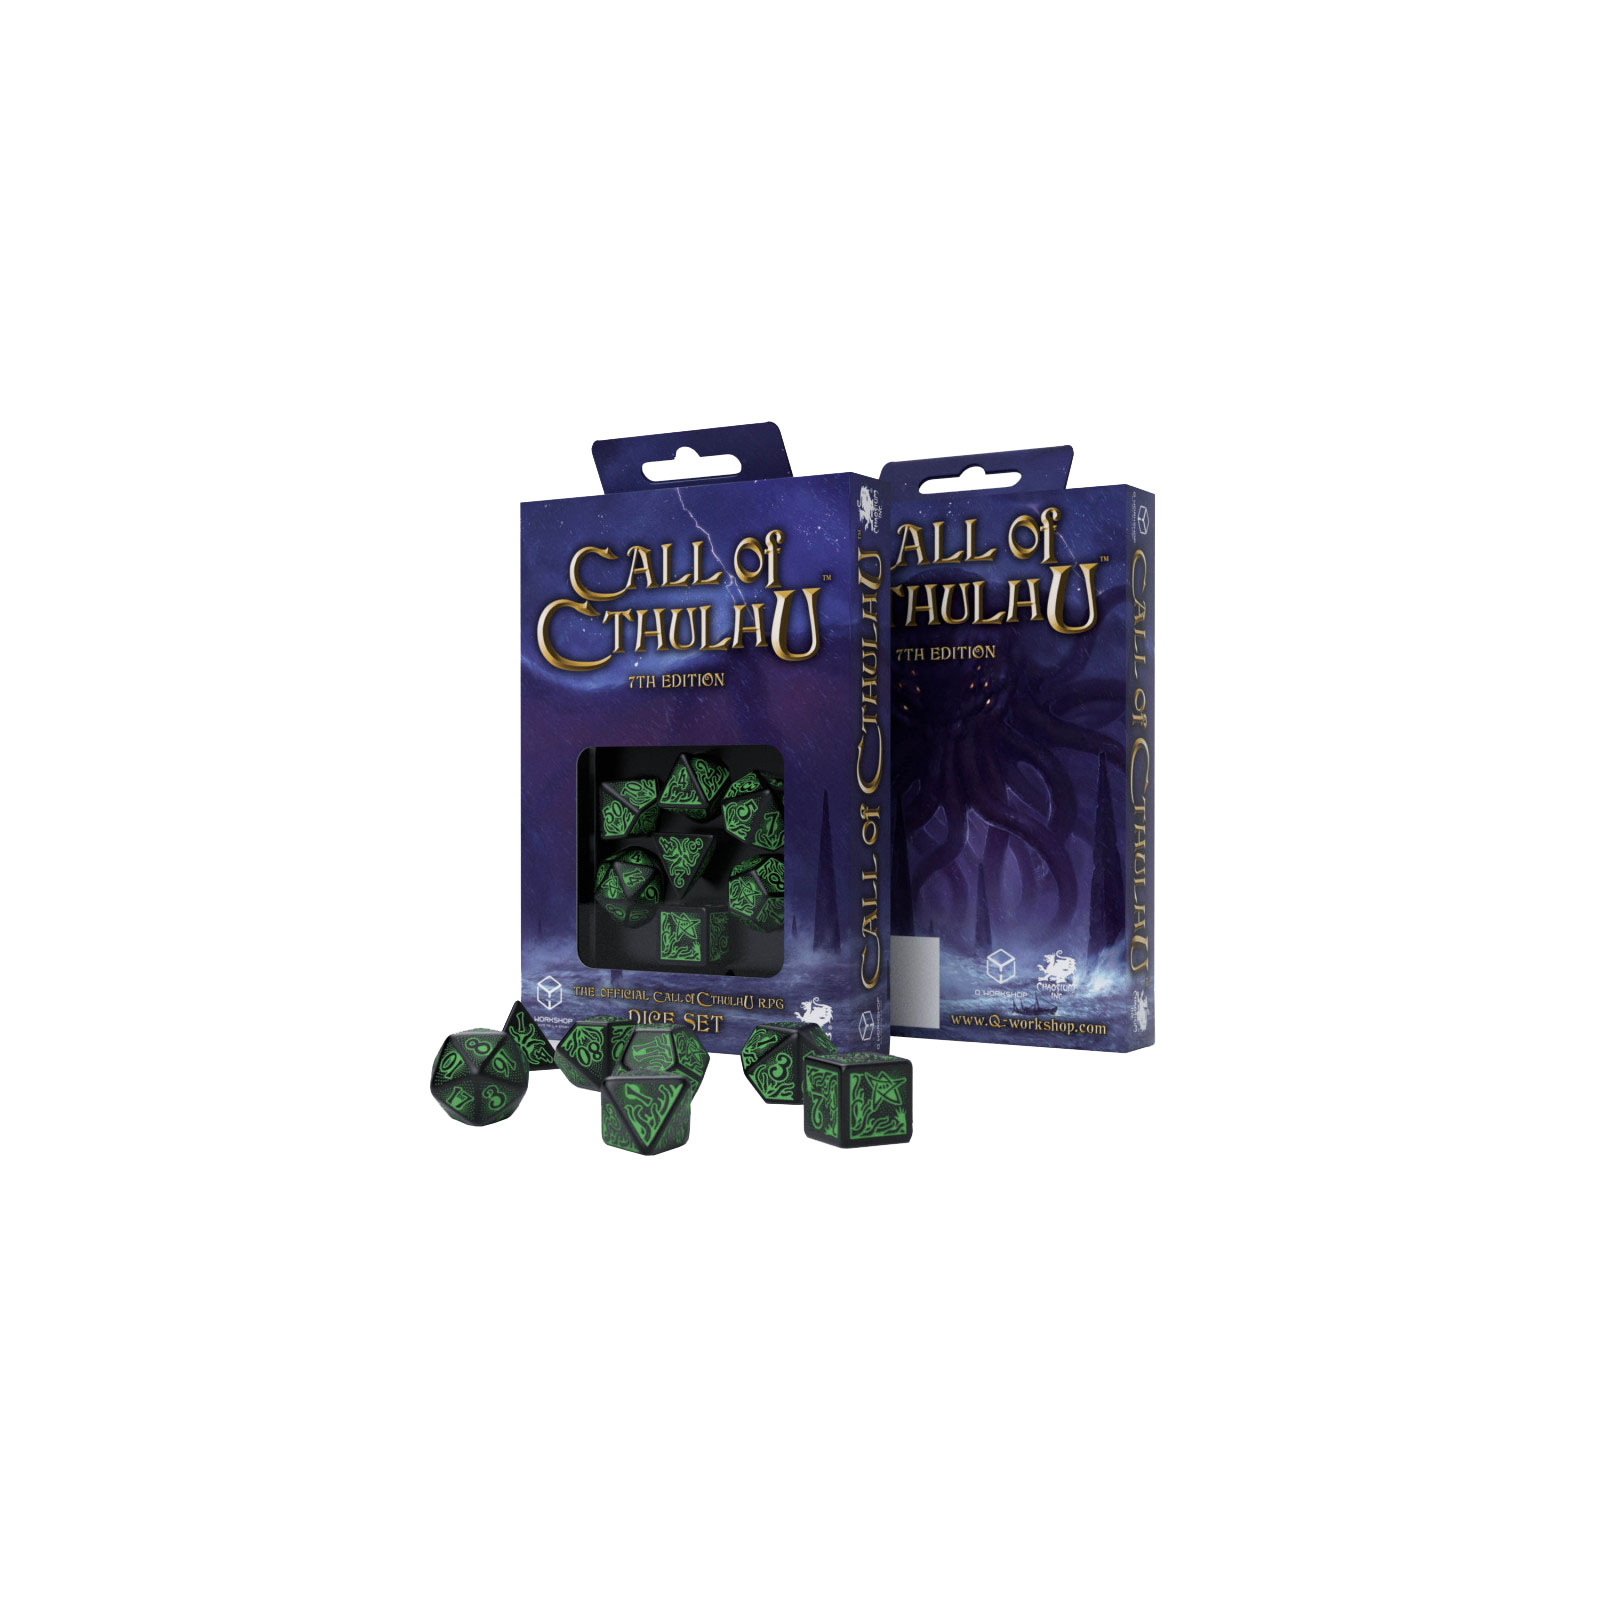 Набор кубиков для настольных игр Q-Workshop Call of Cthulhu 7th Edition Black green Dice Set (7 шт) (SCTR21) изображение 2